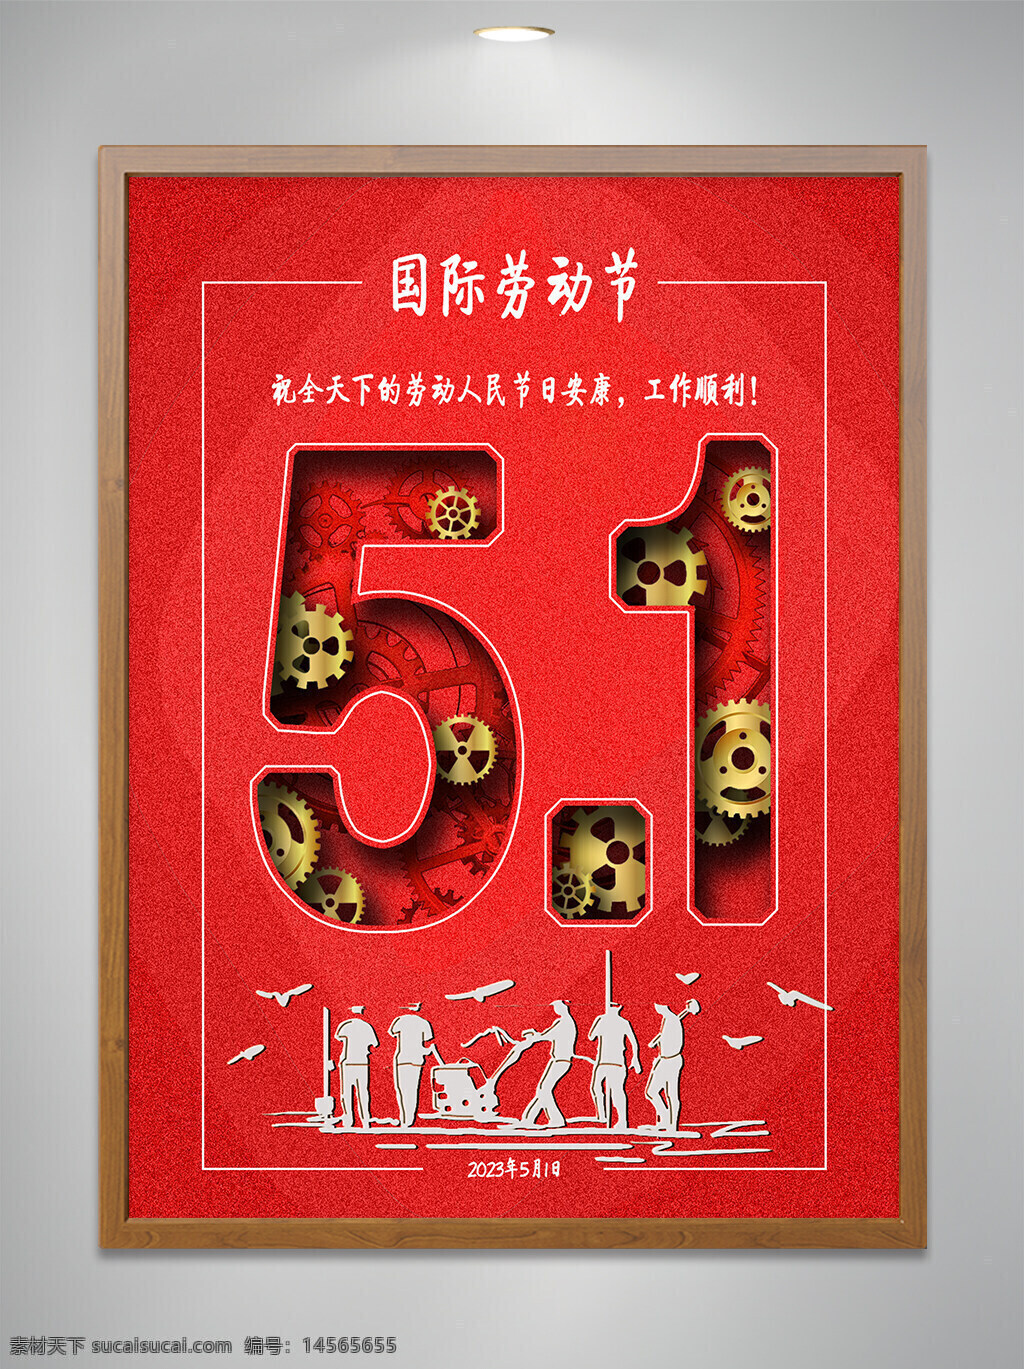 5月1日 劳动节 国际劳动节 劳动海报 红色 元素设计 劳动元素 节日安康 工作顺利